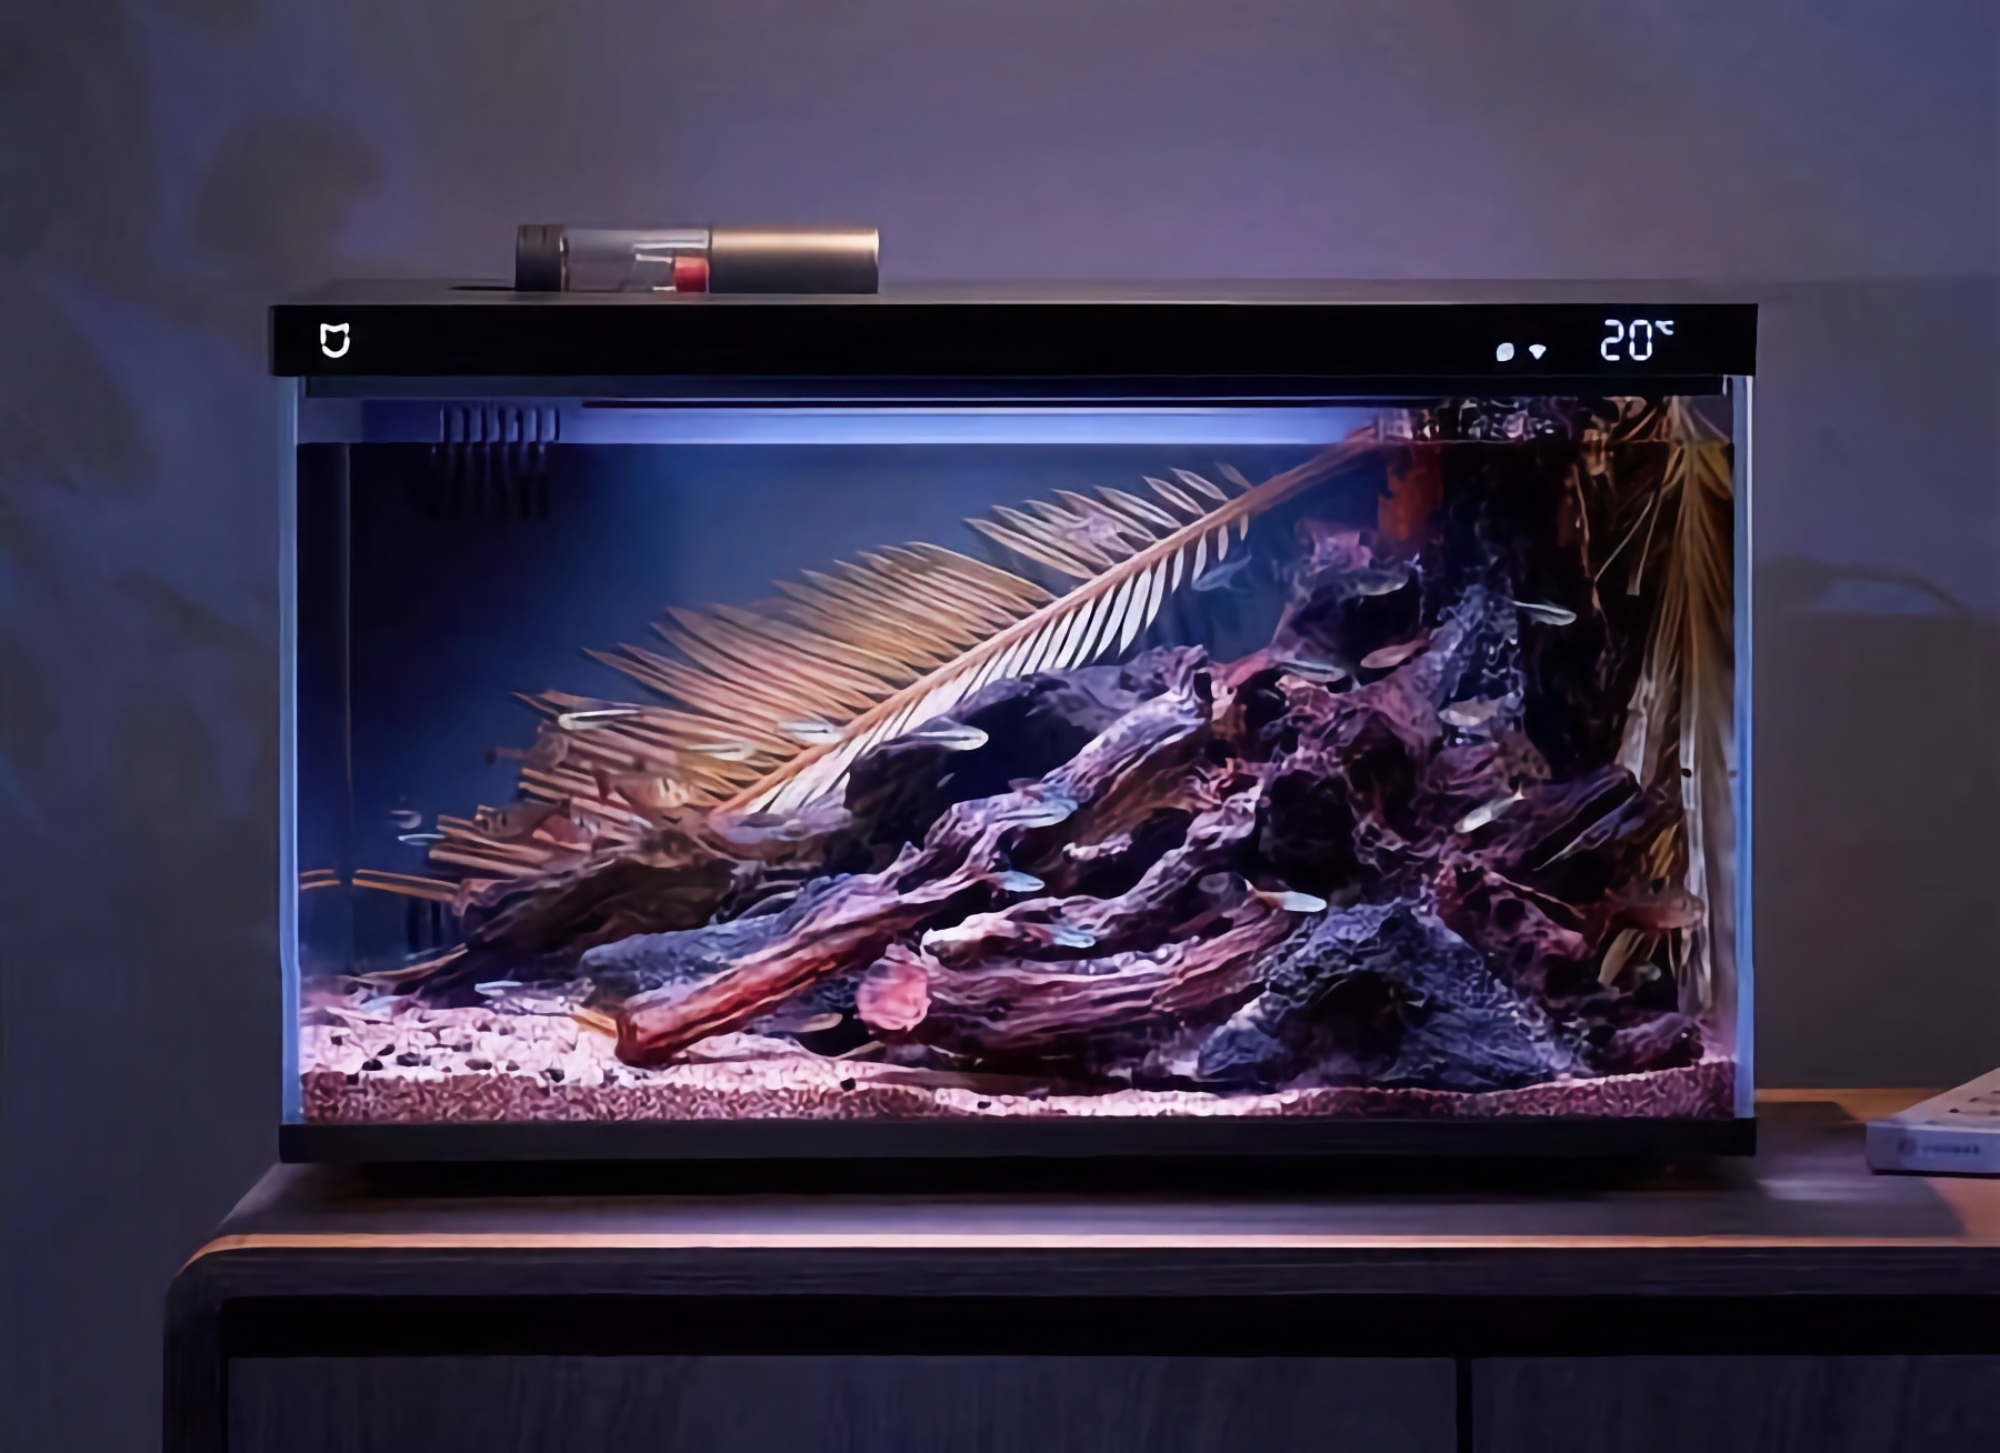 Xiaomi представила розумний акваріум із фільтром для води, датчиком температури, RGB-підсвічуванням і функцією віддаленого годування риб